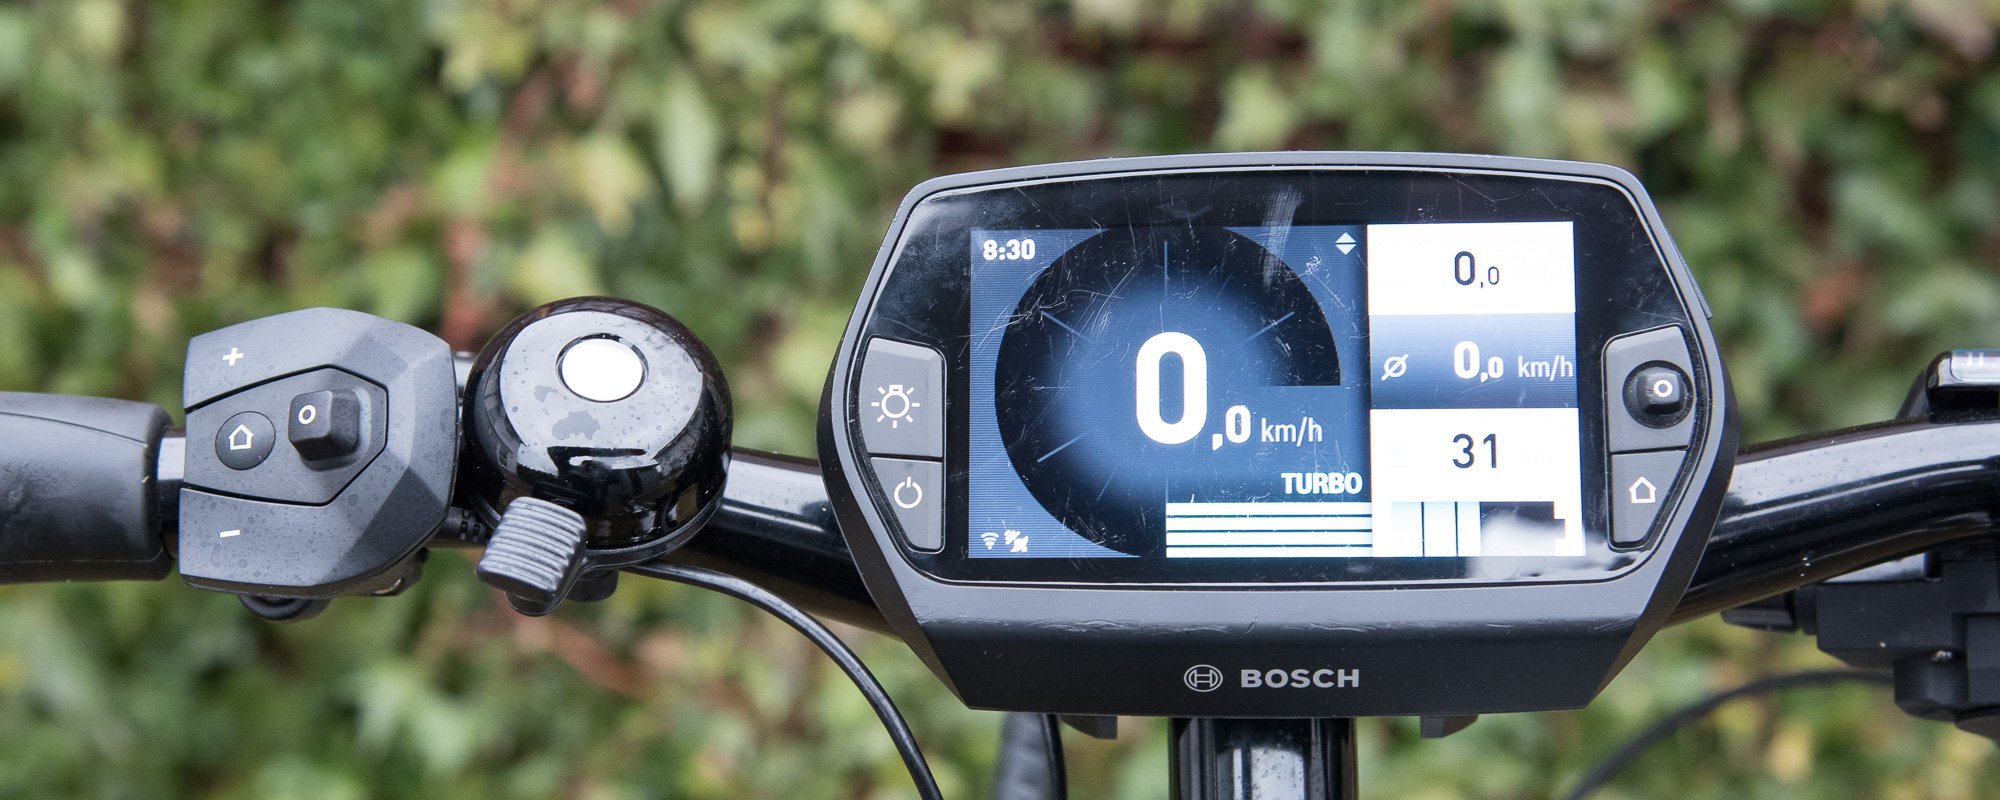 Bosch Nyon im Test » eBike Navigation einfach und komplett